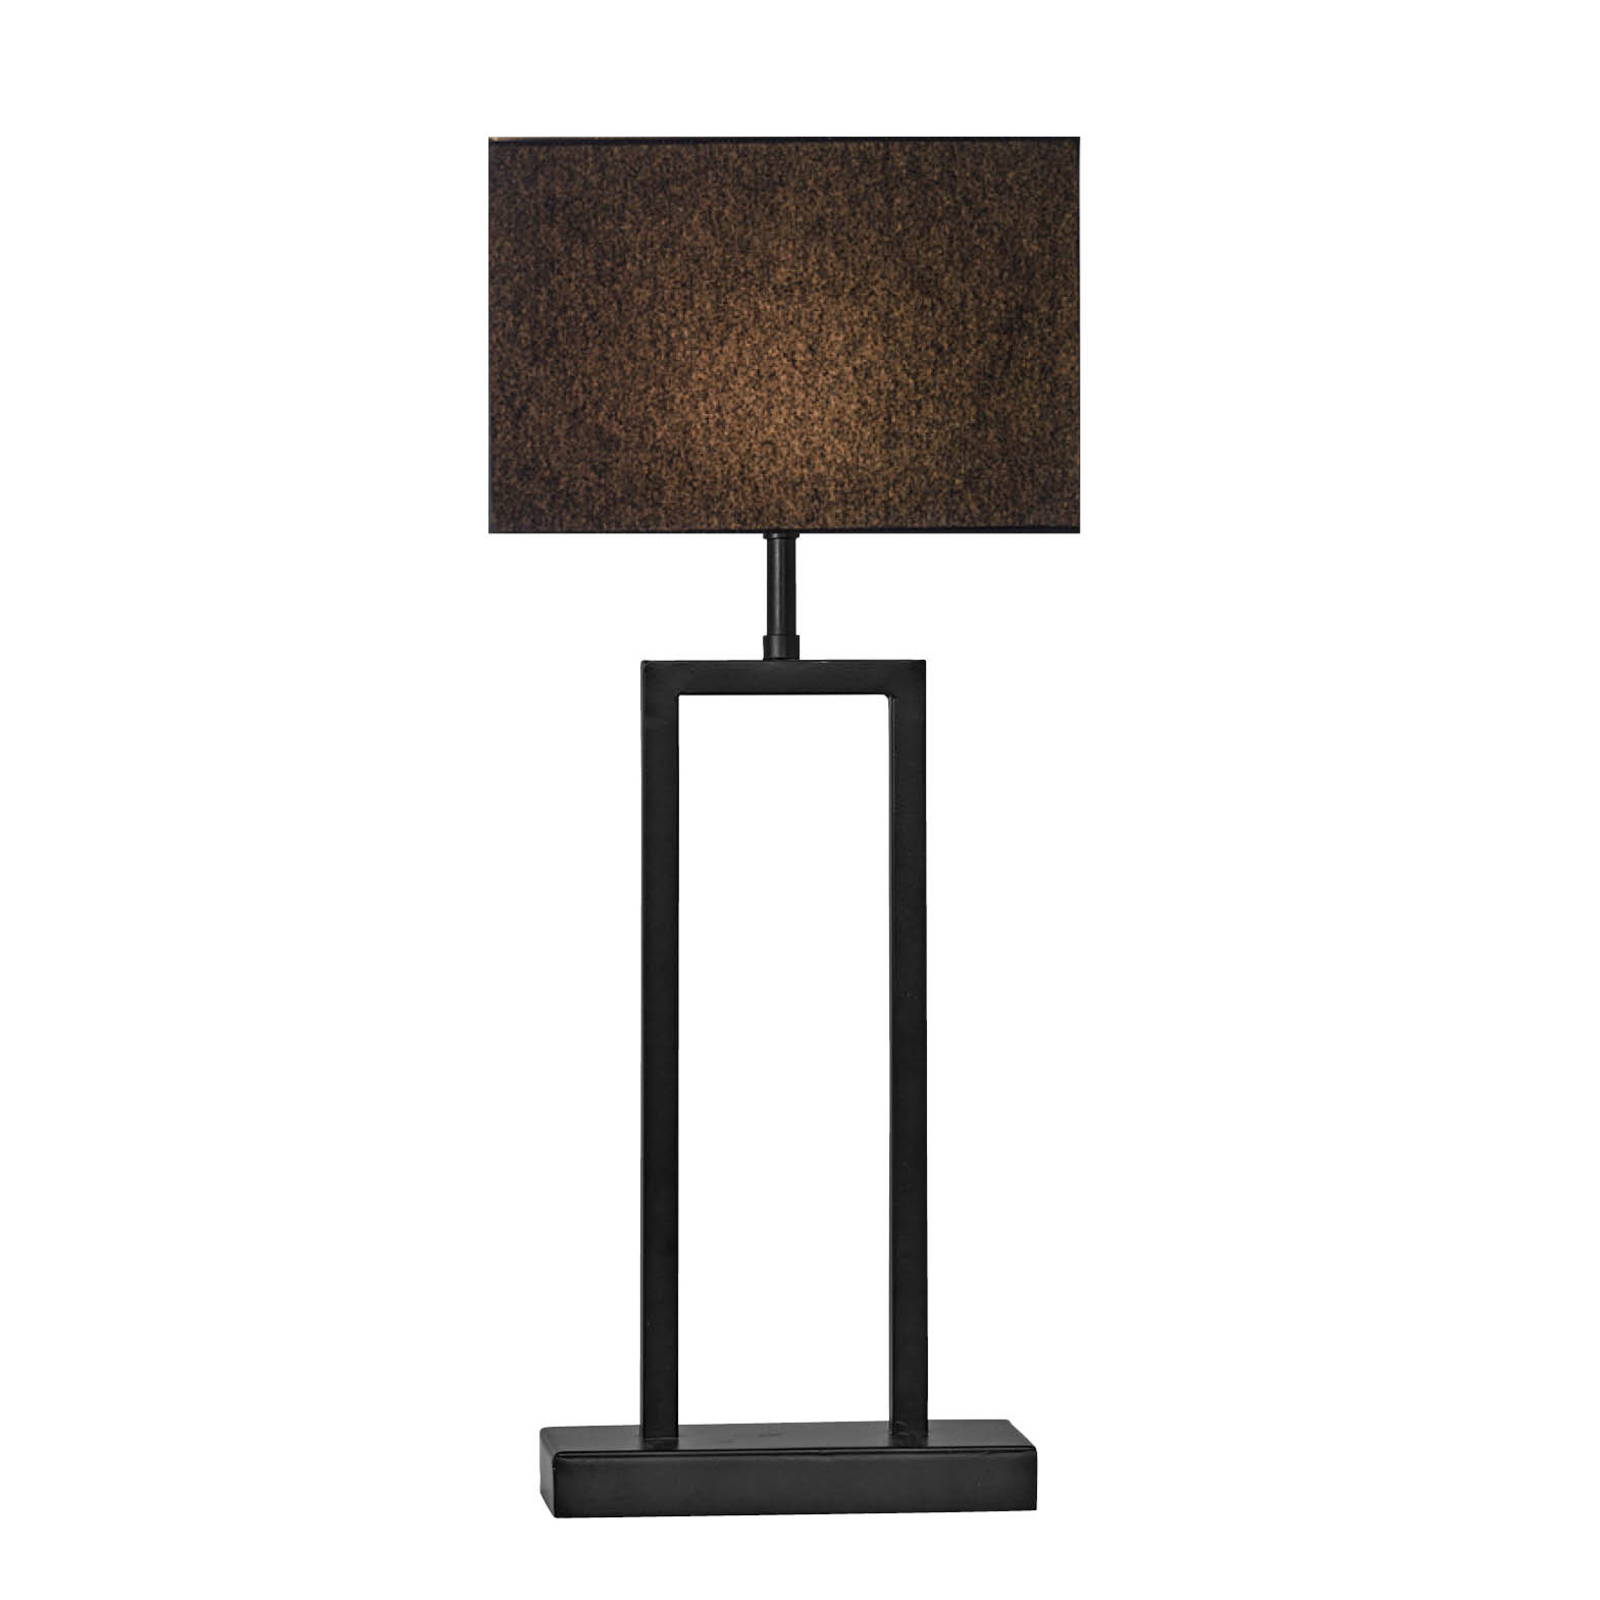 PR Home Rod stolní lampa celá v černé barvě